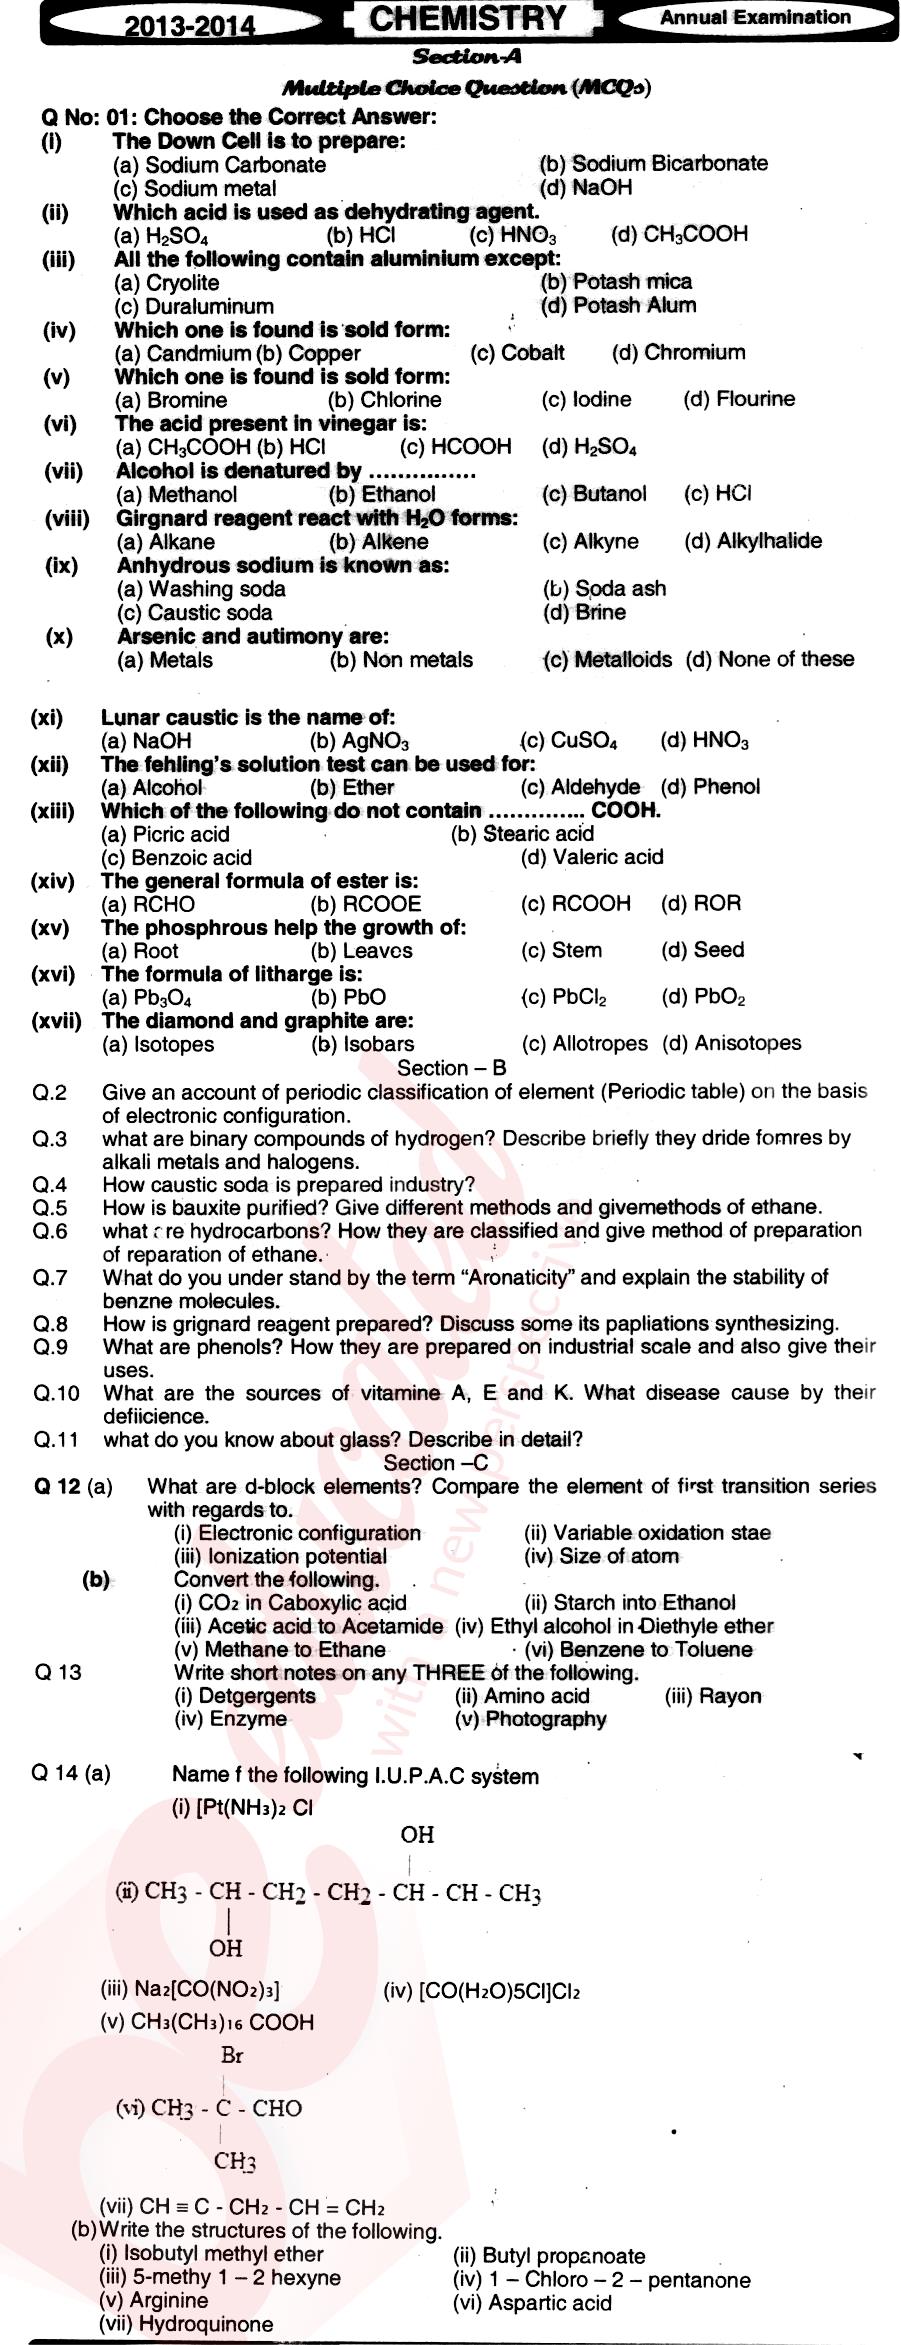 Chemistry FSC Part 2 Past Paper Group 1 BISE Mirpurkhas 2014